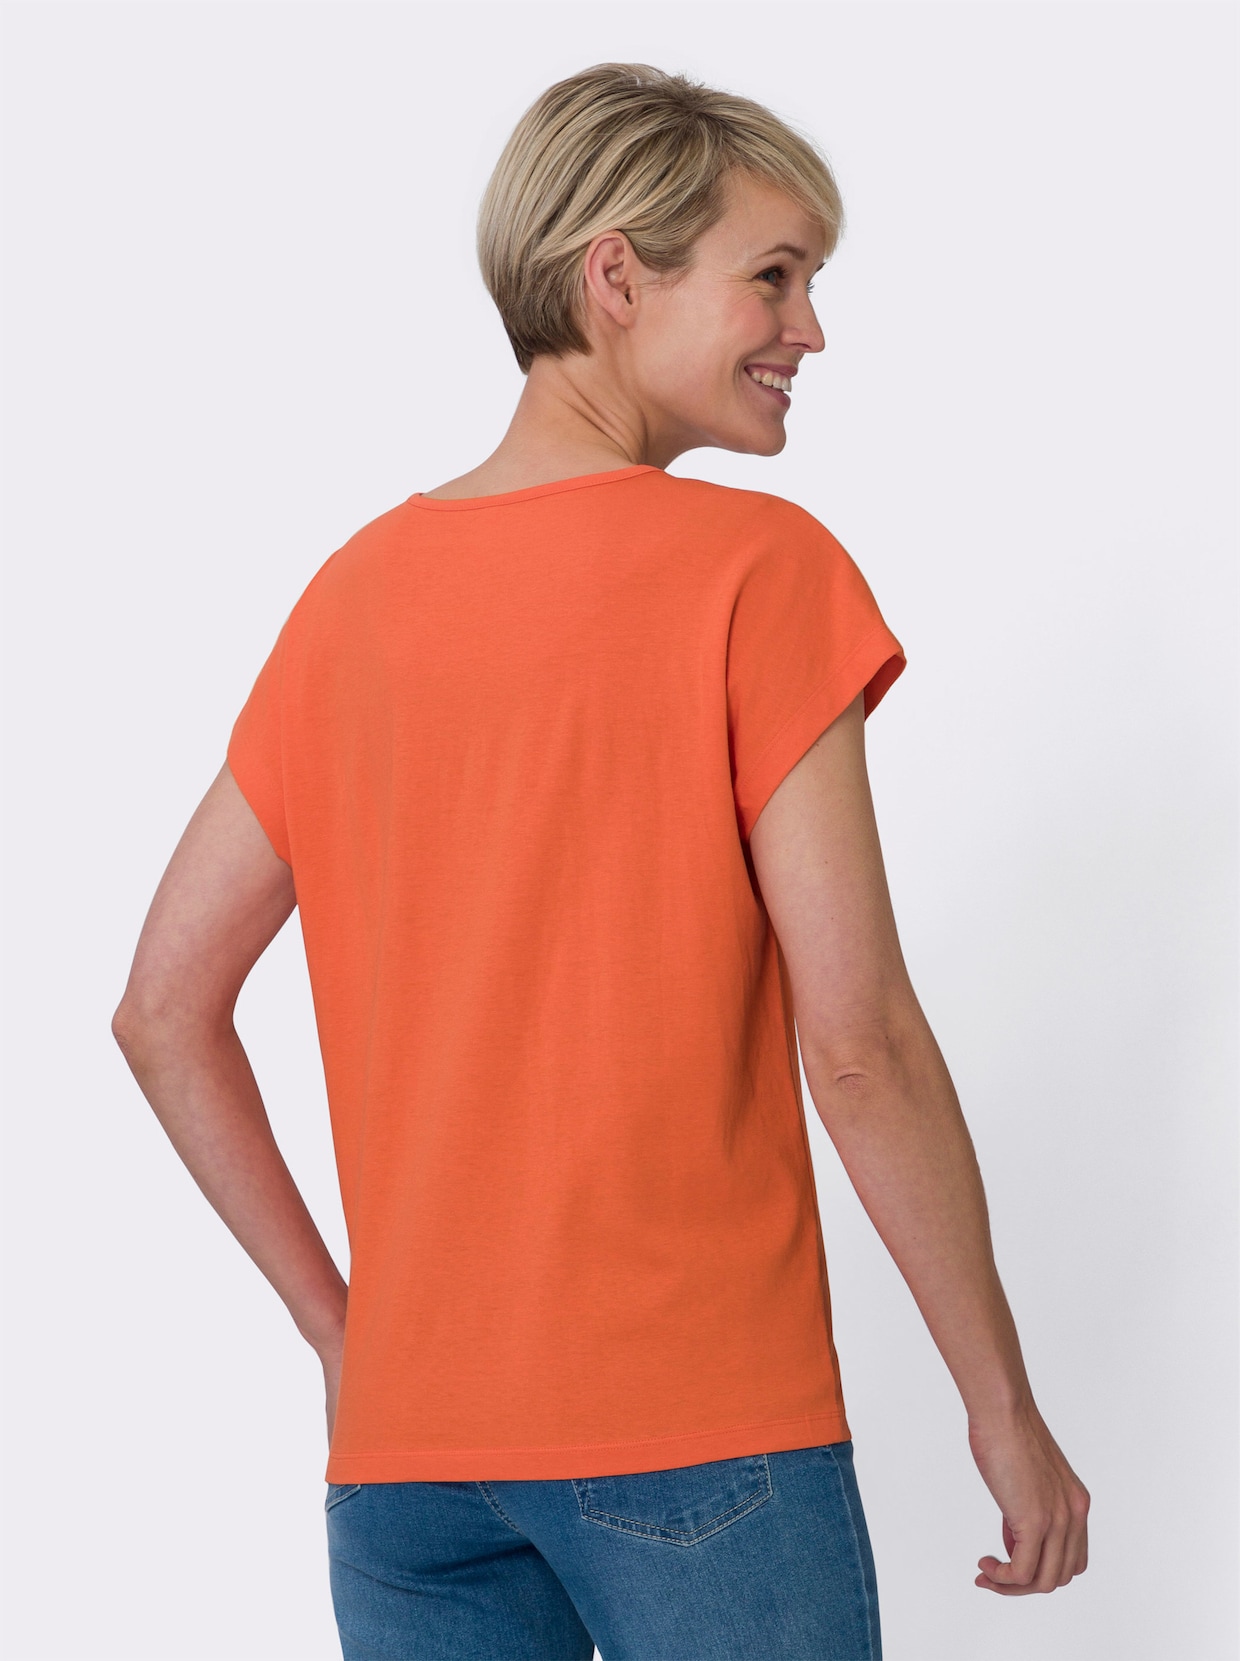 Tričko s krátkým rukávem - oranžová-koňaková